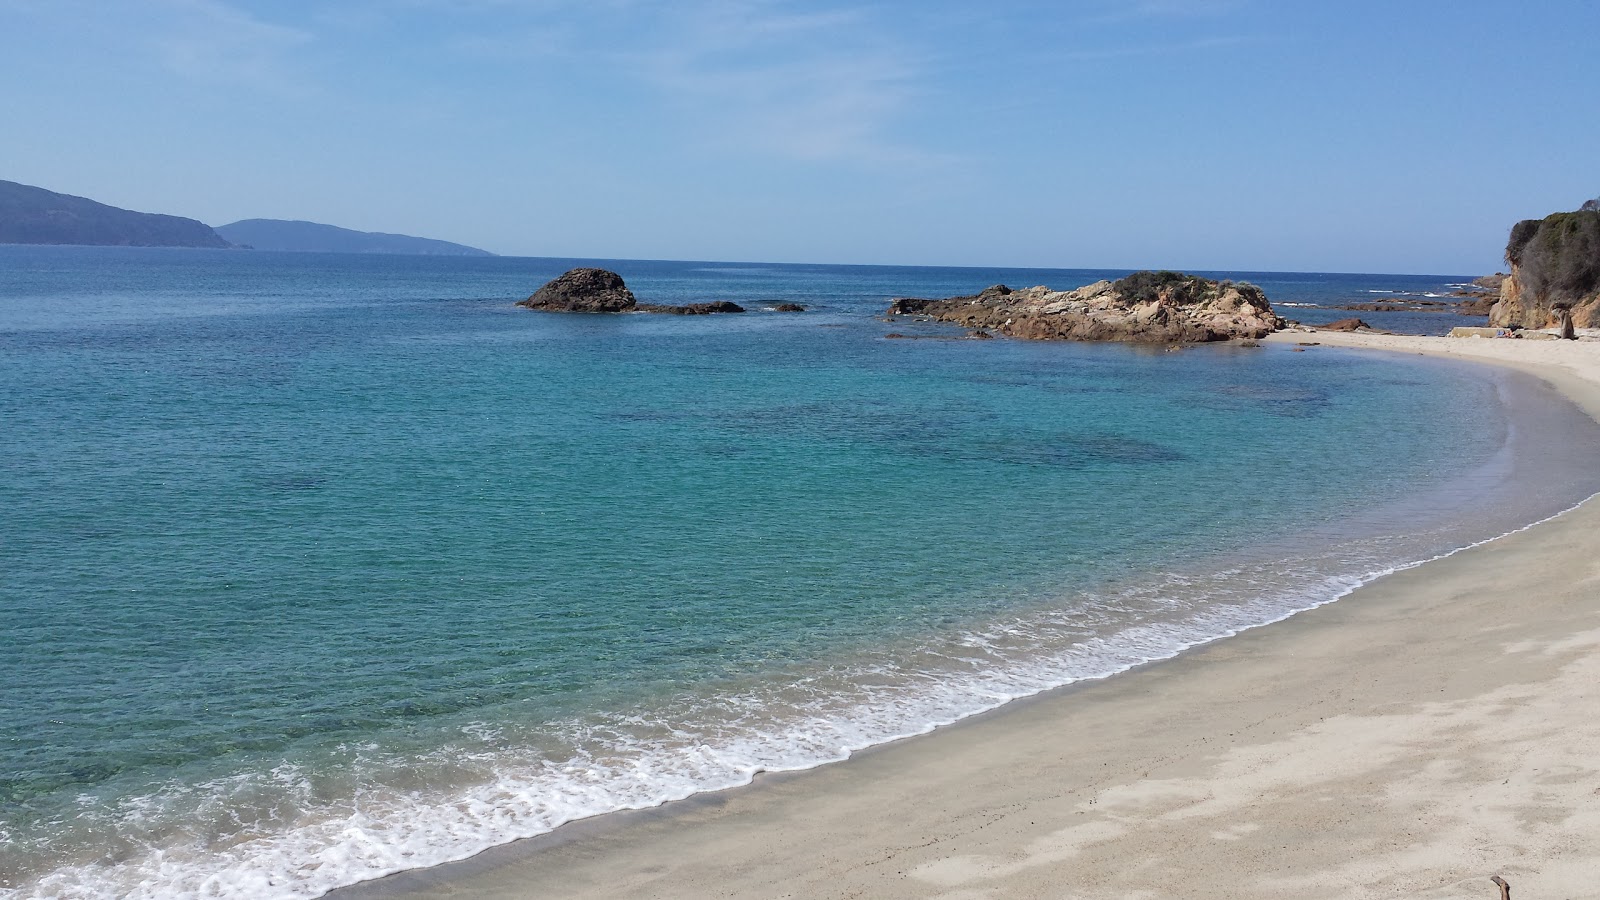 Zdjęcie Liamone beach II - popularne miejsce wśród znawców relaksu